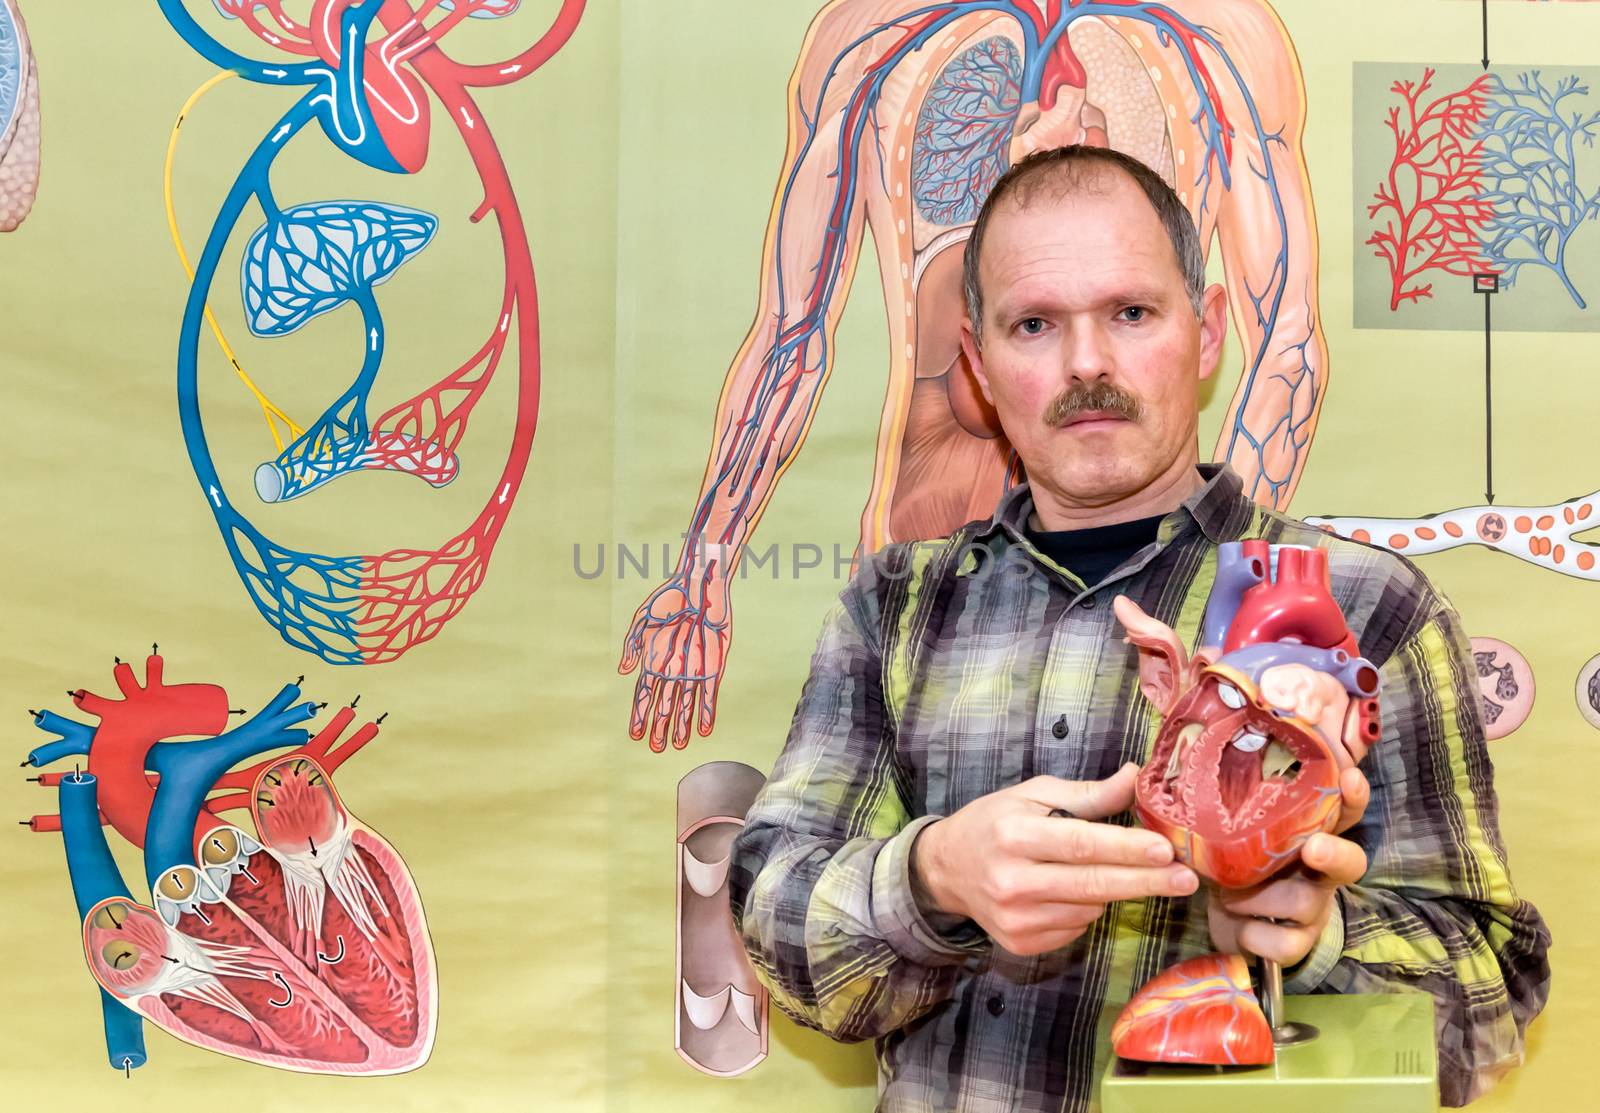 Biology teacher showing model of human heart by BenSchonewille